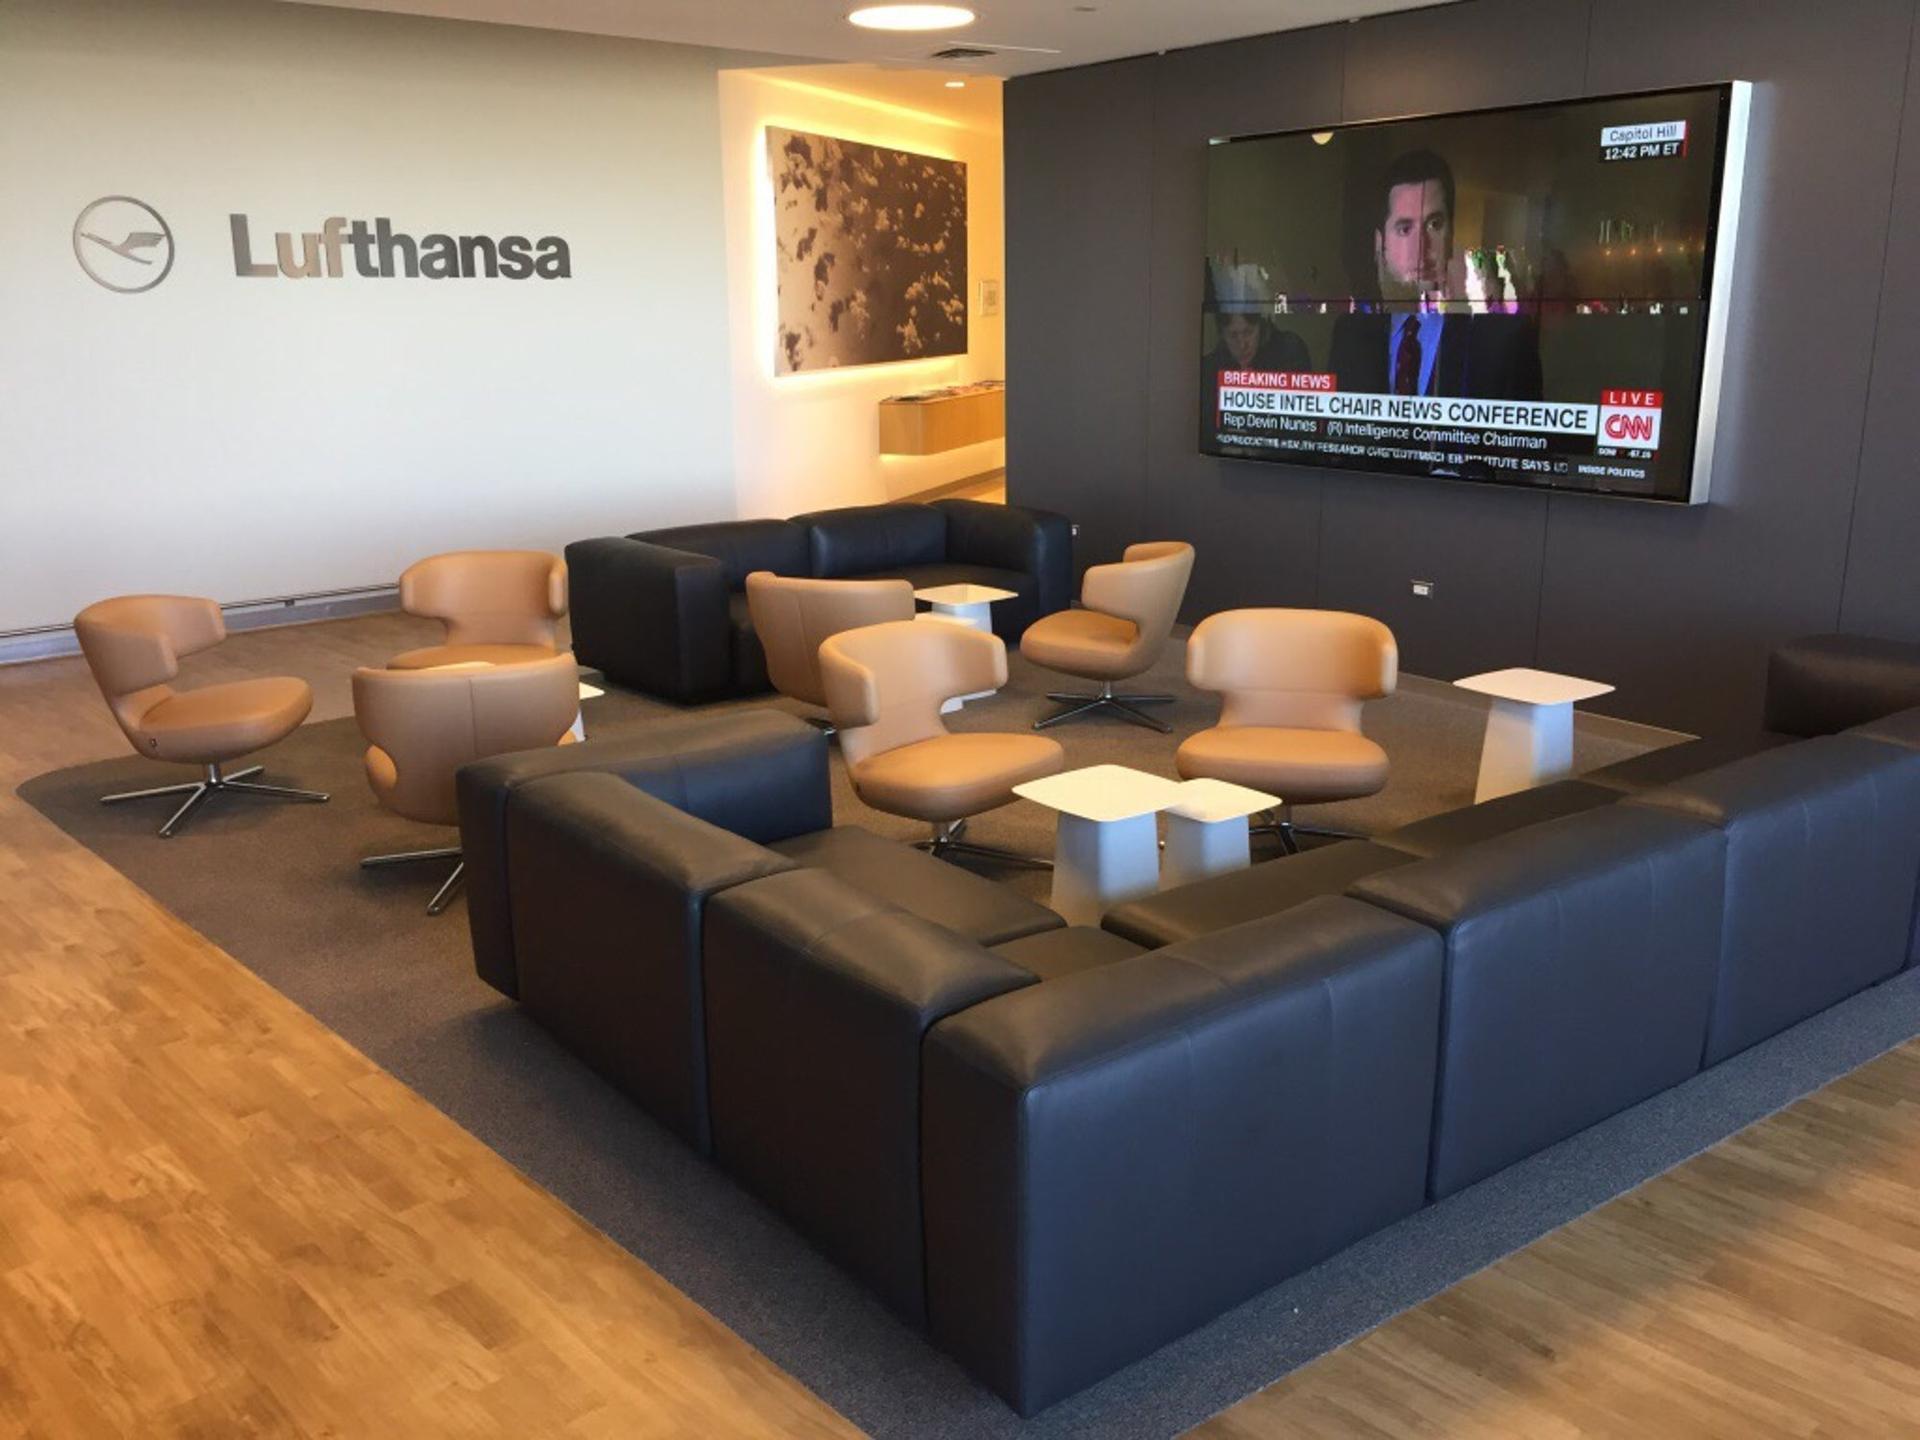 Lufthansa Lounge image 9 of 16